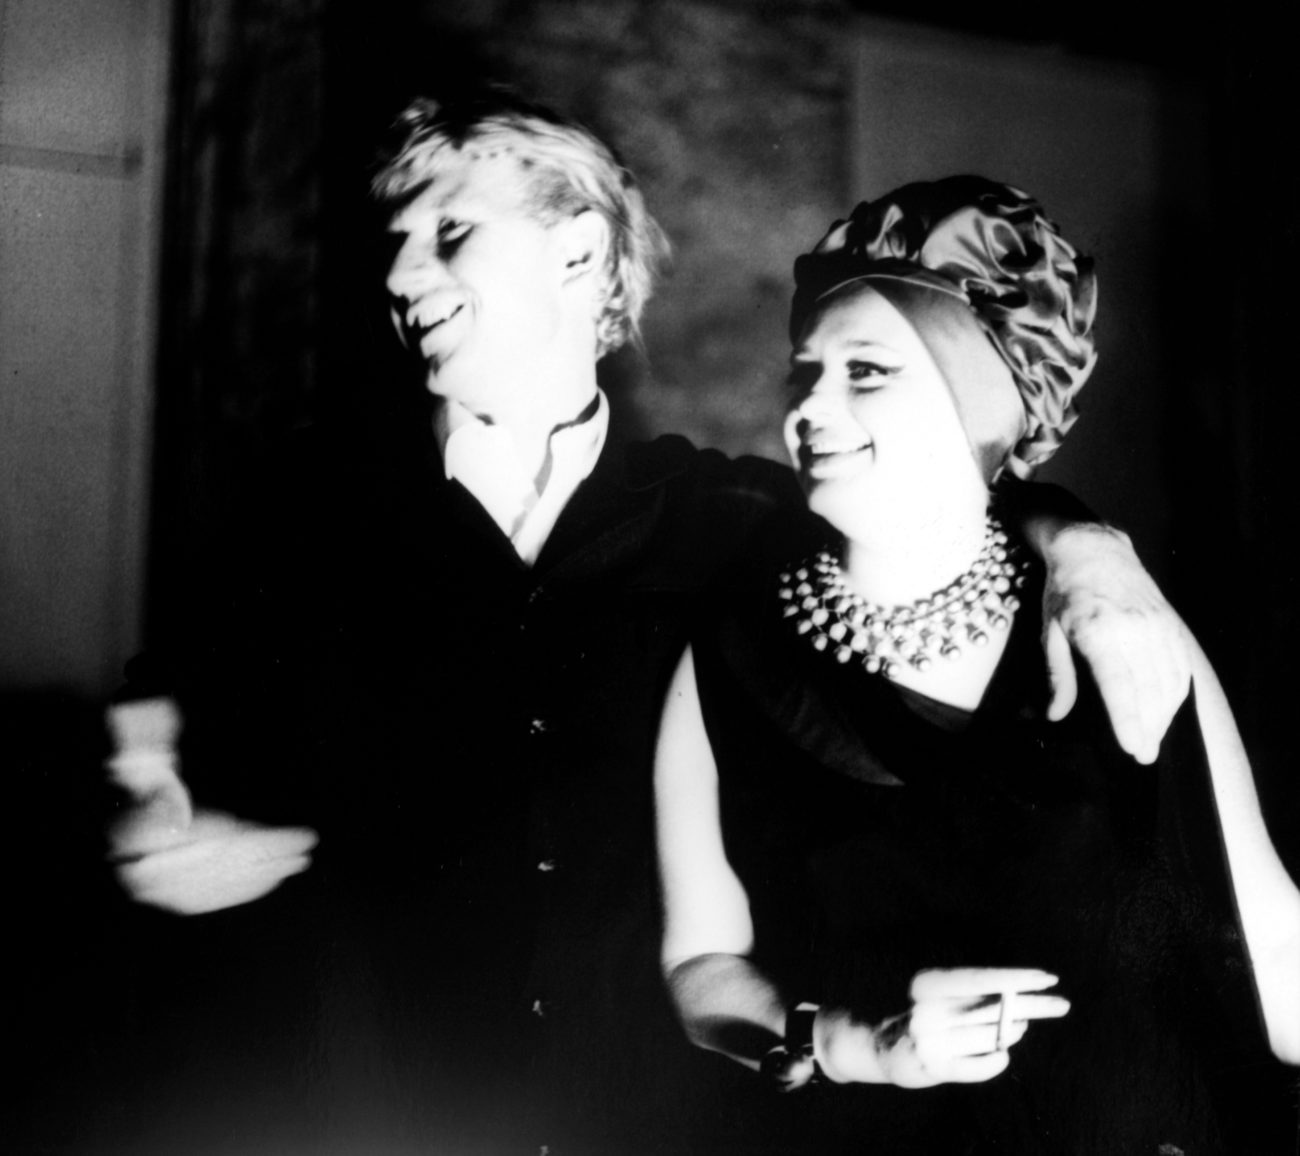 Nanda Vigo and Max Bill, 1965, Photo by Erard Wehrmann